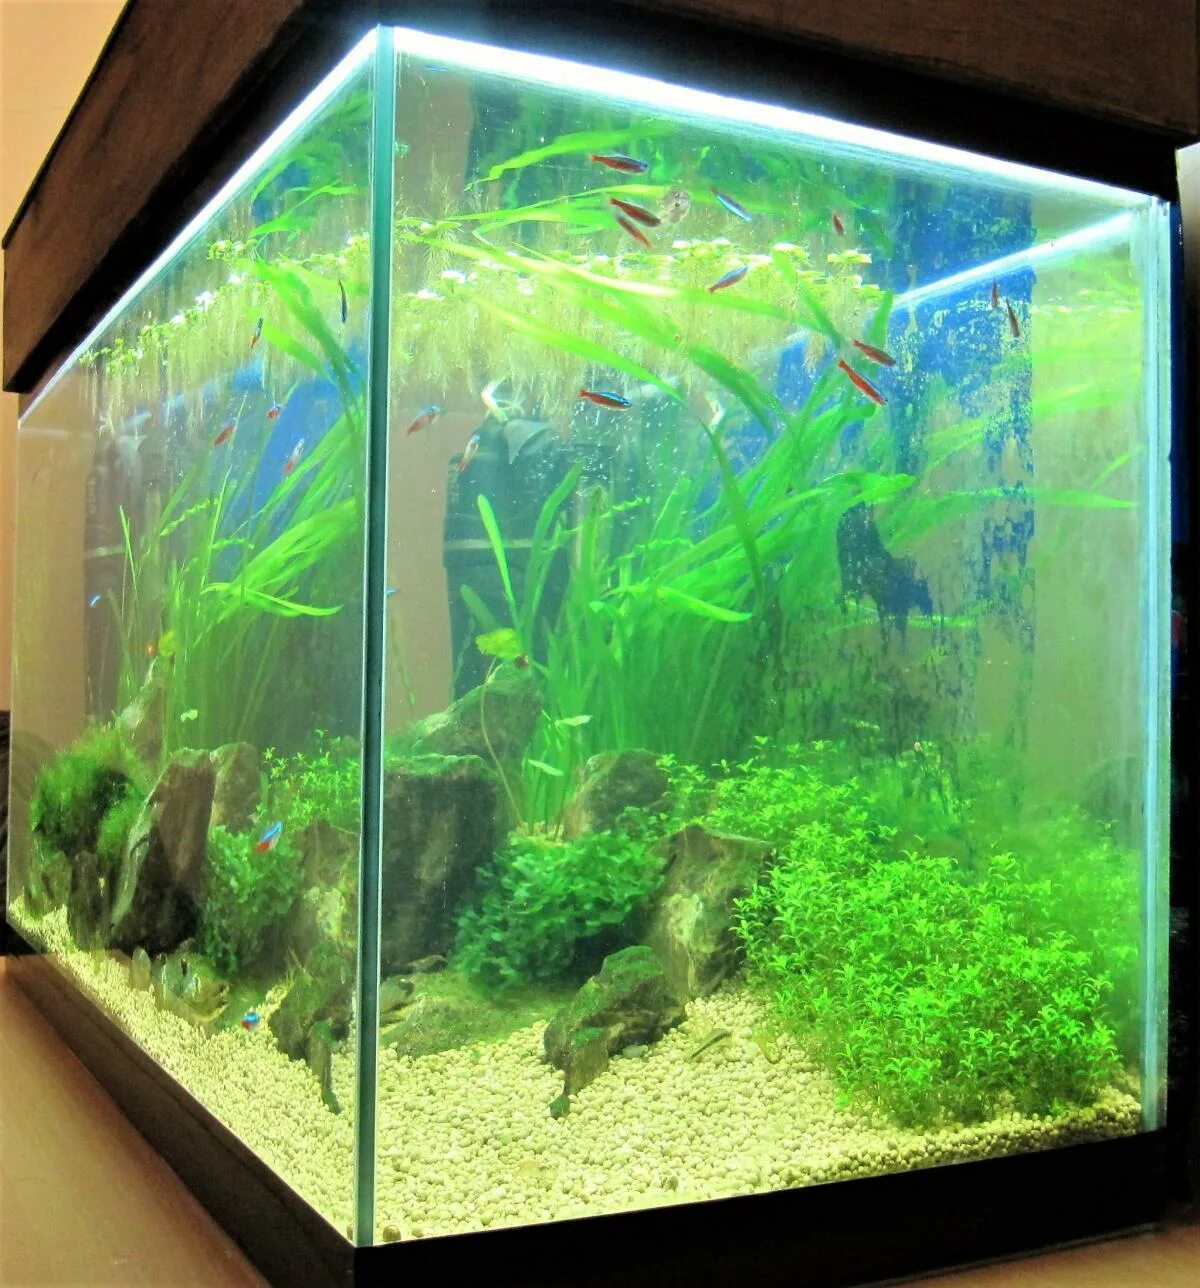 Грязный аквариум. Запуск аквариума. Зелень на стекле аквариума. Аквариум с покрытым стеклом. Почему аквариум покрылся